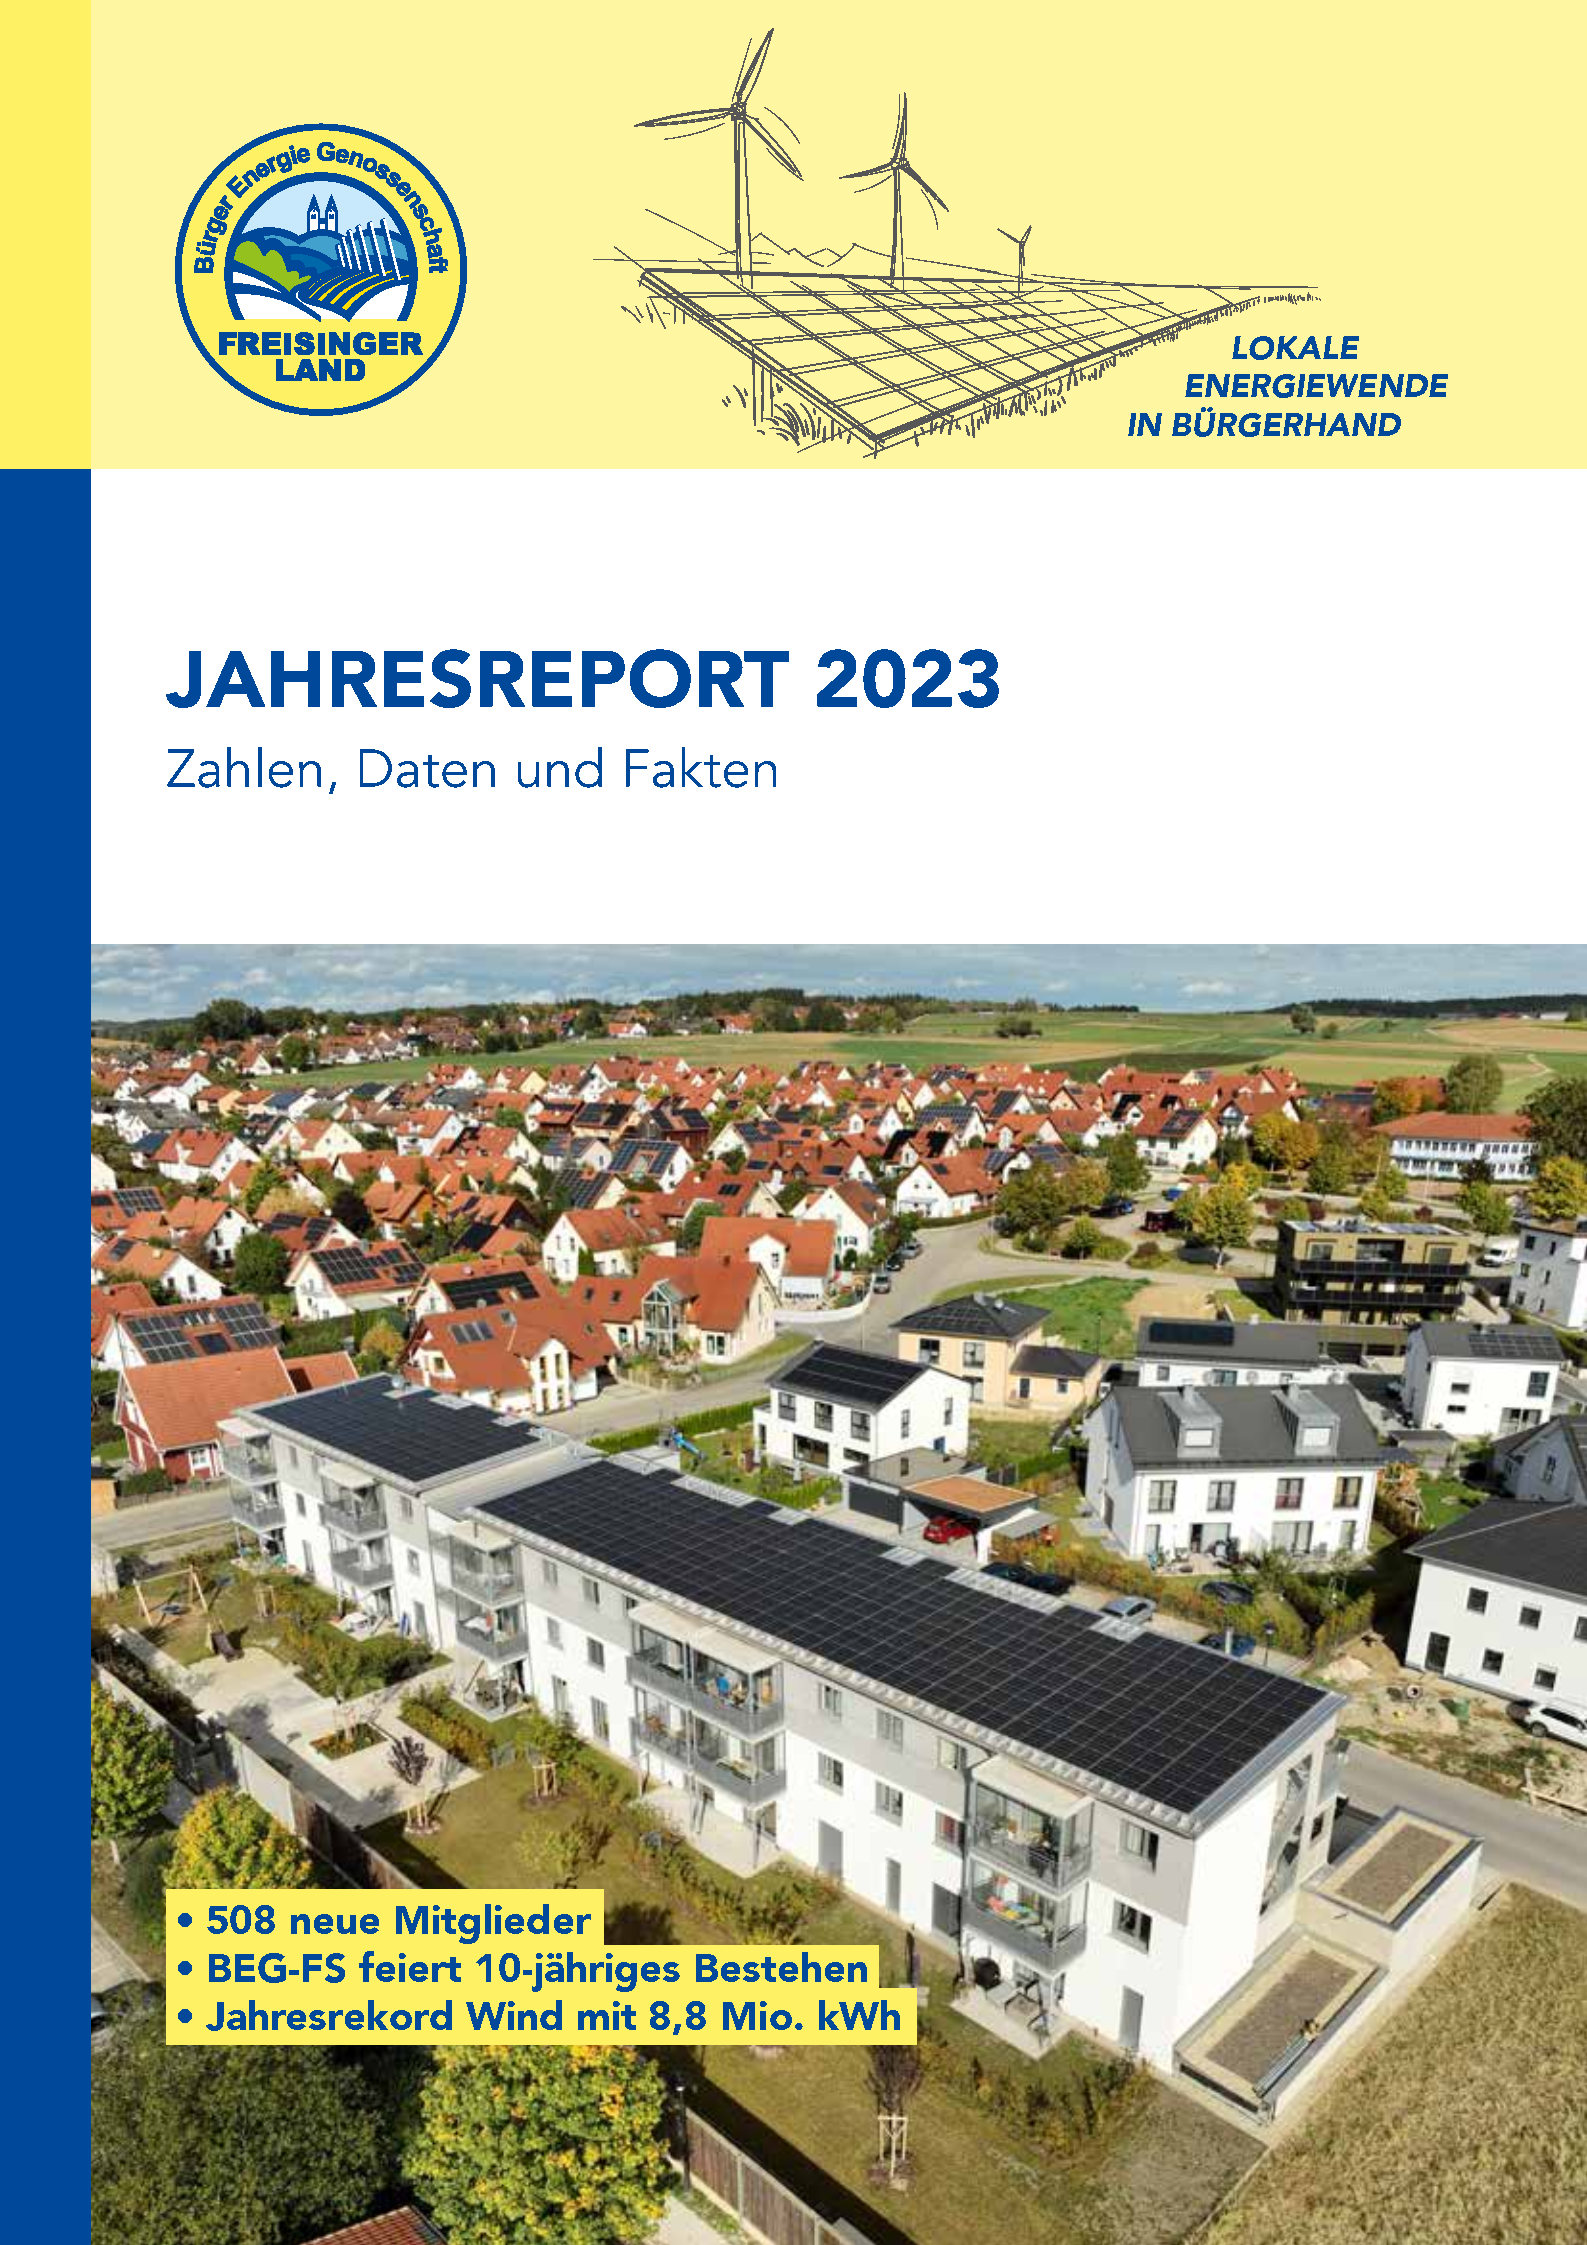 Jahresreport-Buerger-Energie-Genossenschaft-Freisinger-Land-2023-Zahlen-Daten-Fakten